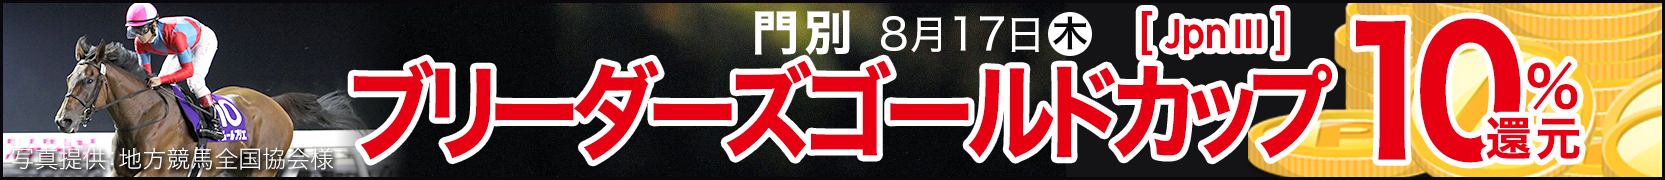 ダートグレード競走キャンペーン ブリーダーズゴールドカップ(JpnIII)